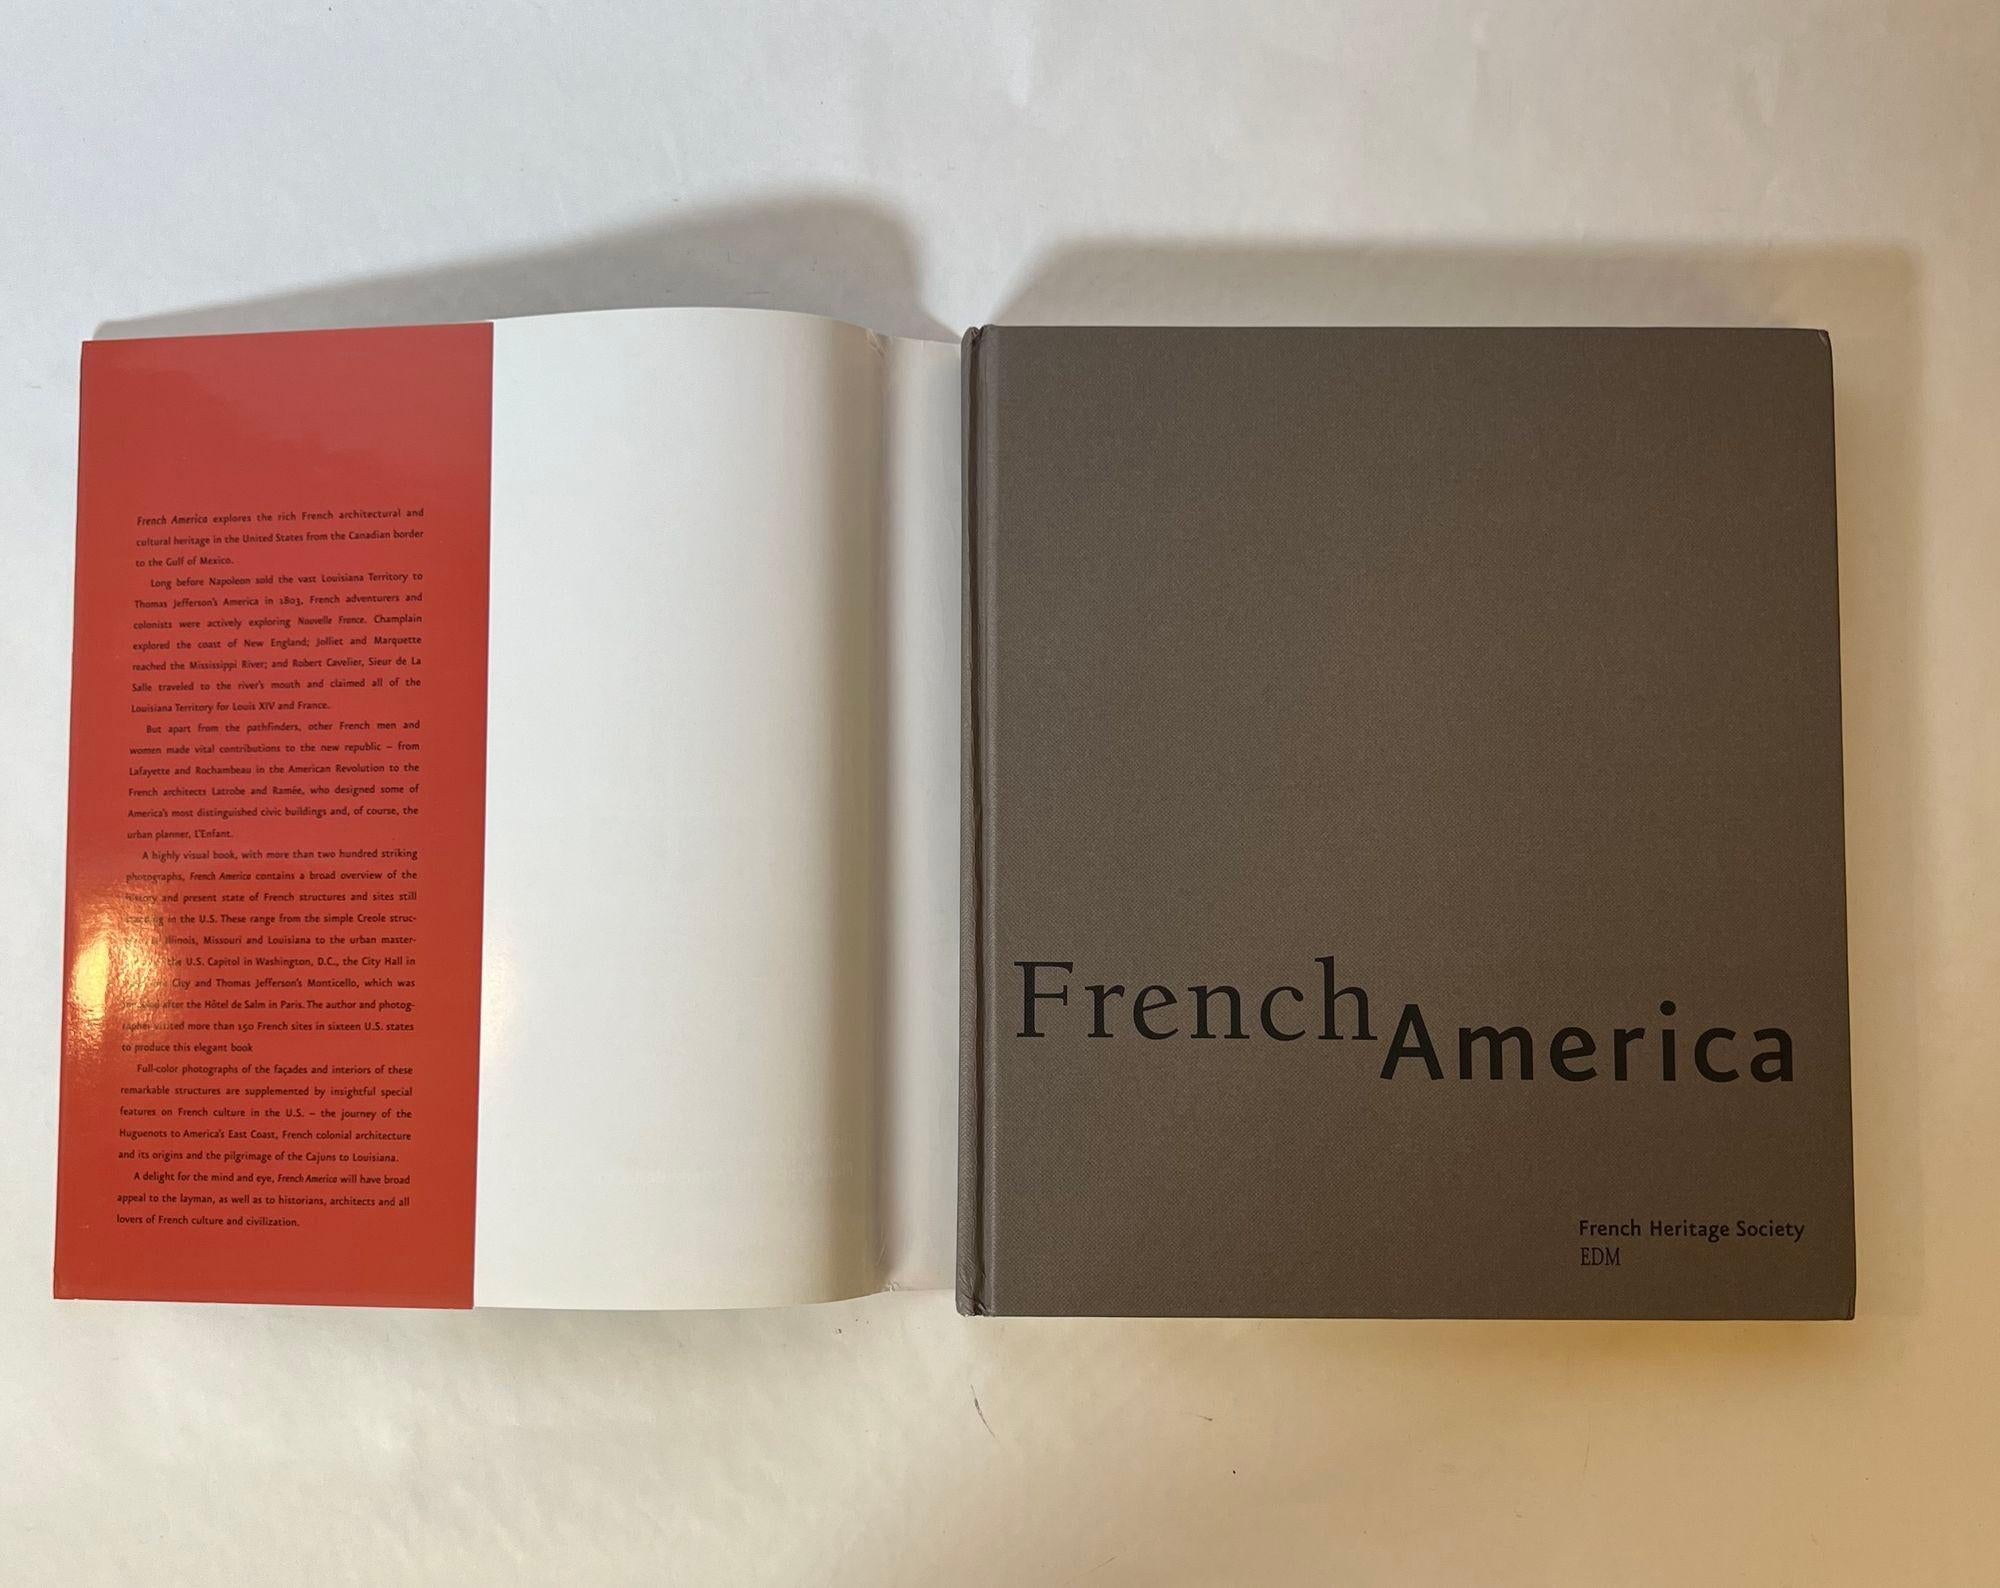 Französisch Amerika von  Arielle De La Tour D'Auvergne und Ron Katz 2005 Hardcover.
Französisches Amerika: Französische Architektur von der Kolonialisierung bis zur Geburt einer Nation ist eine atemberaubende visuelle Reise durch die reiche und